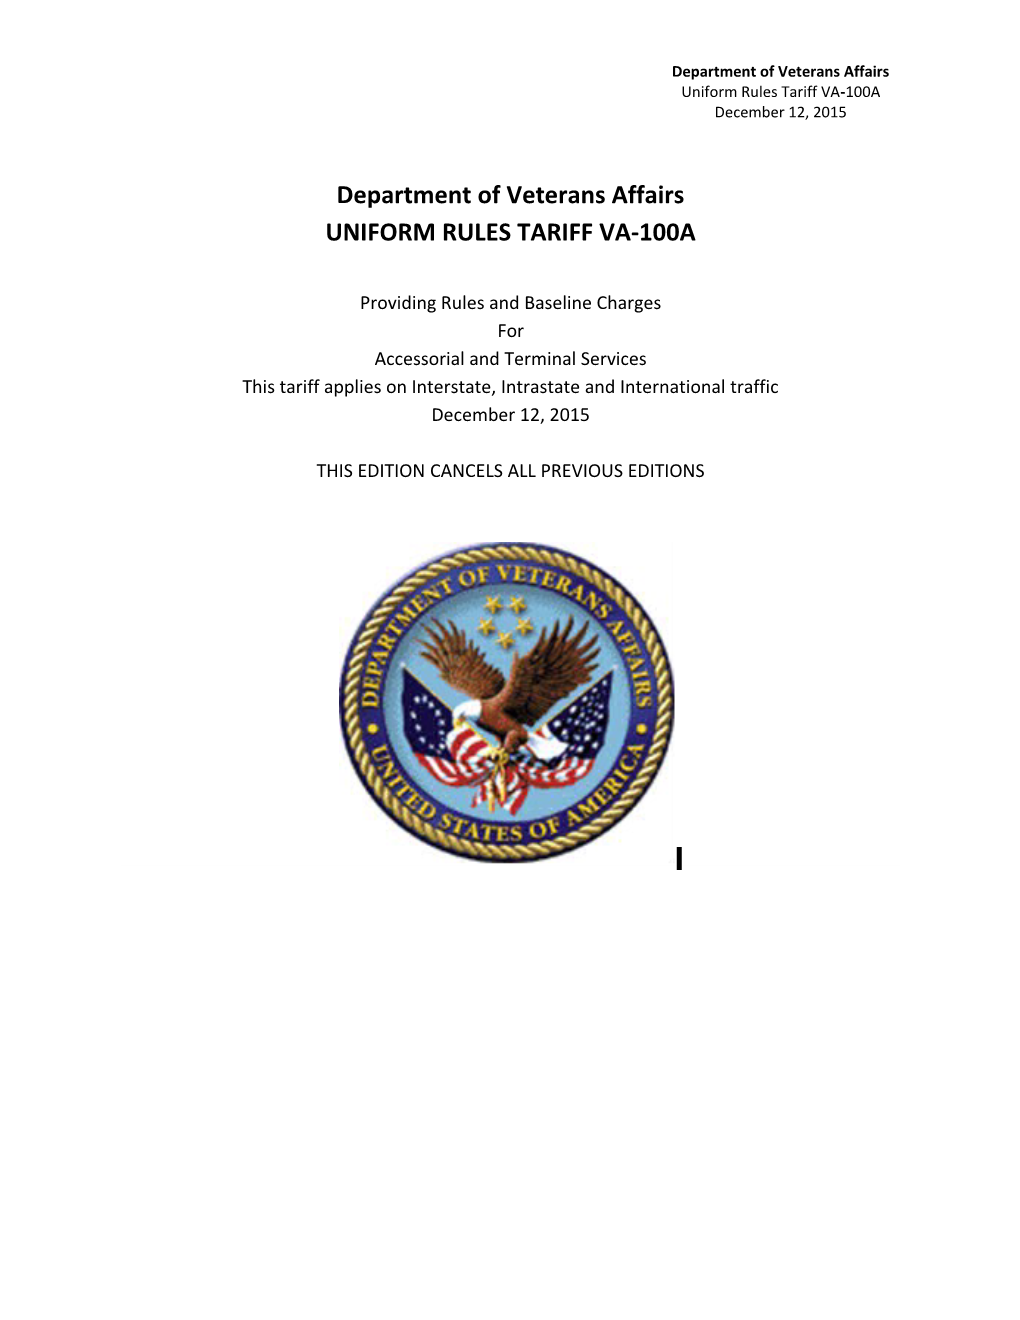 VA Uniform Rules Tariff No 100A July 2013